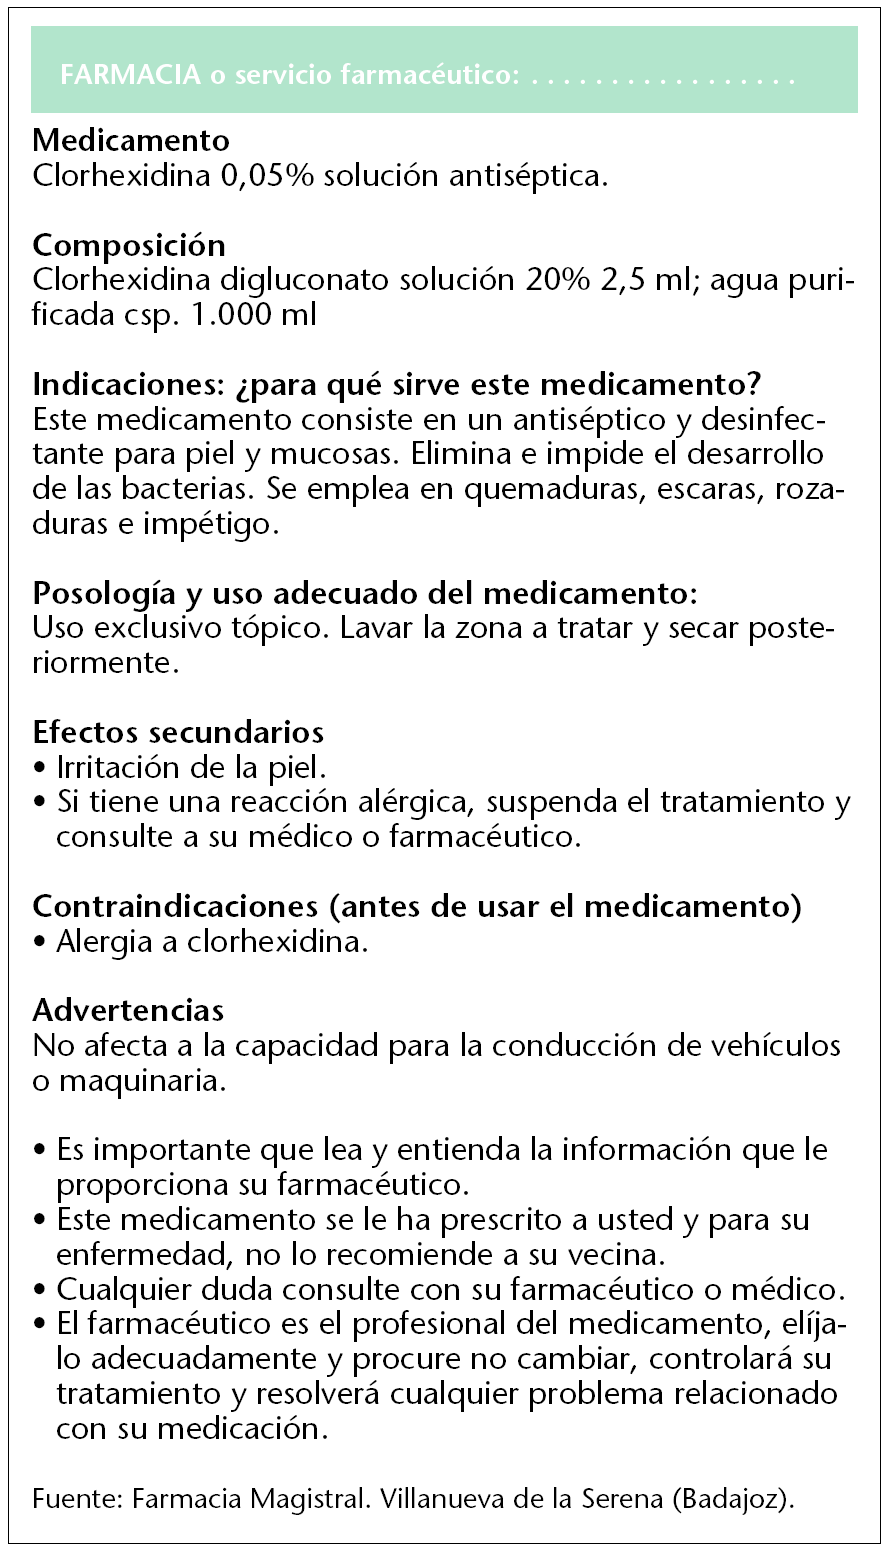 GAMA CRISTALMINA, EL MEJOR ANTISÉPTICO PARA HERIDAS Y QUEMADURAS